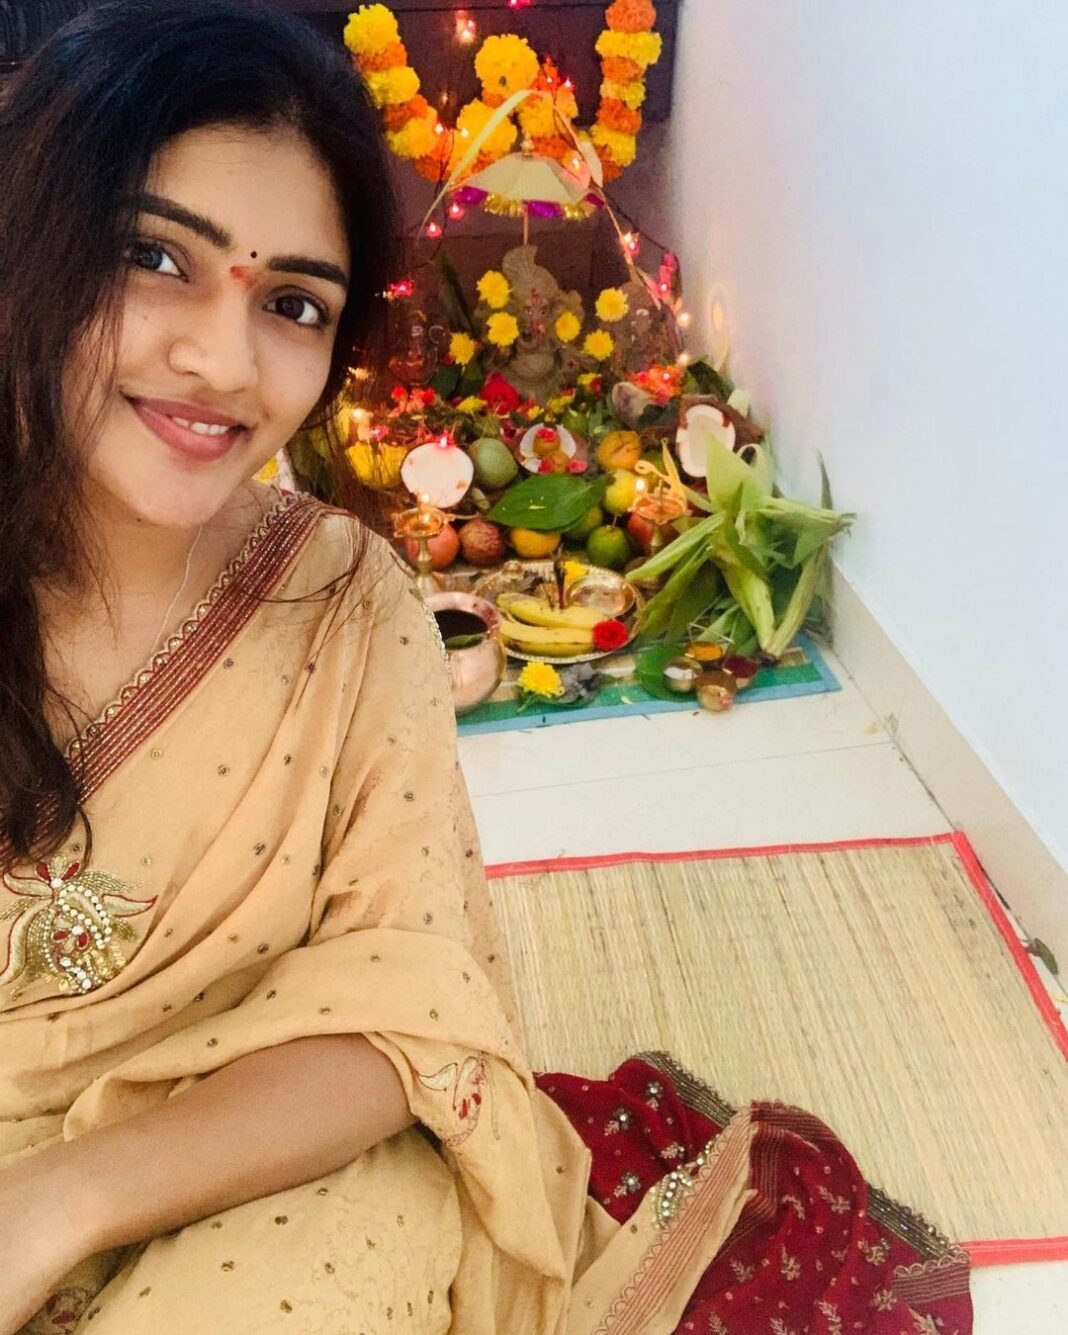 Eesha Rebba Instagram - Om GanGanapatay NamoNama 🙏🏻 Andariki Vinayaka chavithi subhakanshalu 🤗 Wishing everyone a very Happy Ganesh Chathurthi 🙏🏻